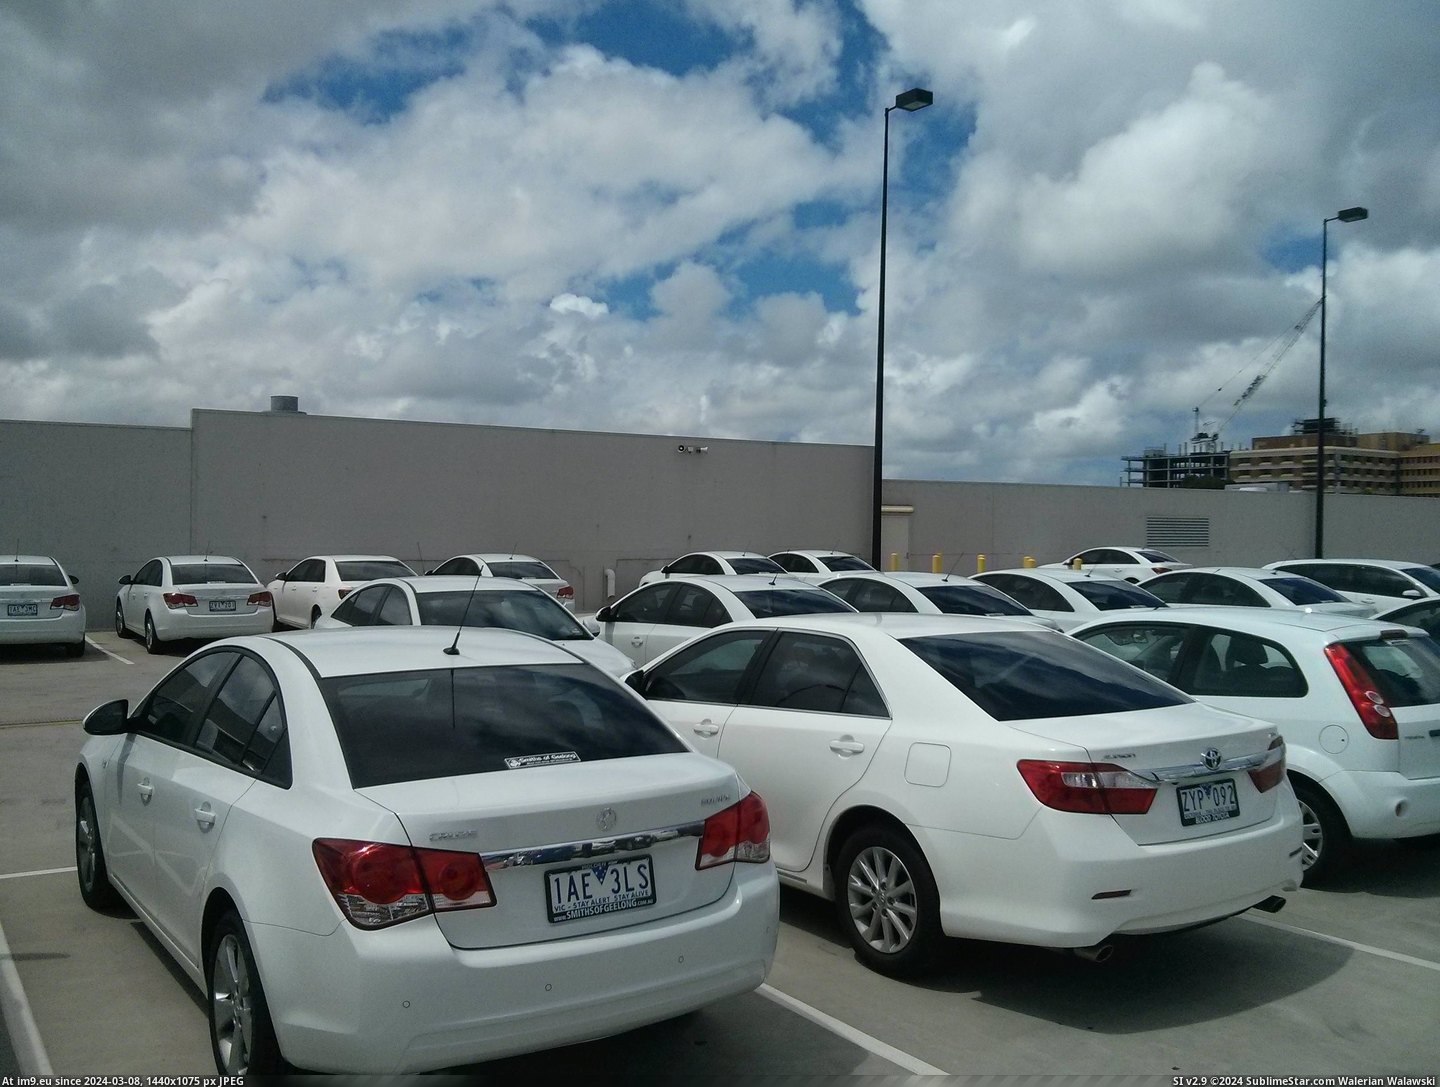 #White #Full #Parked #Carpark #Car #Cars [Mildlyinteresting] I just parked my white car in a carpark full of white cars. Pic. (Obraz z album My r/MILDLYINTERESTING favs))